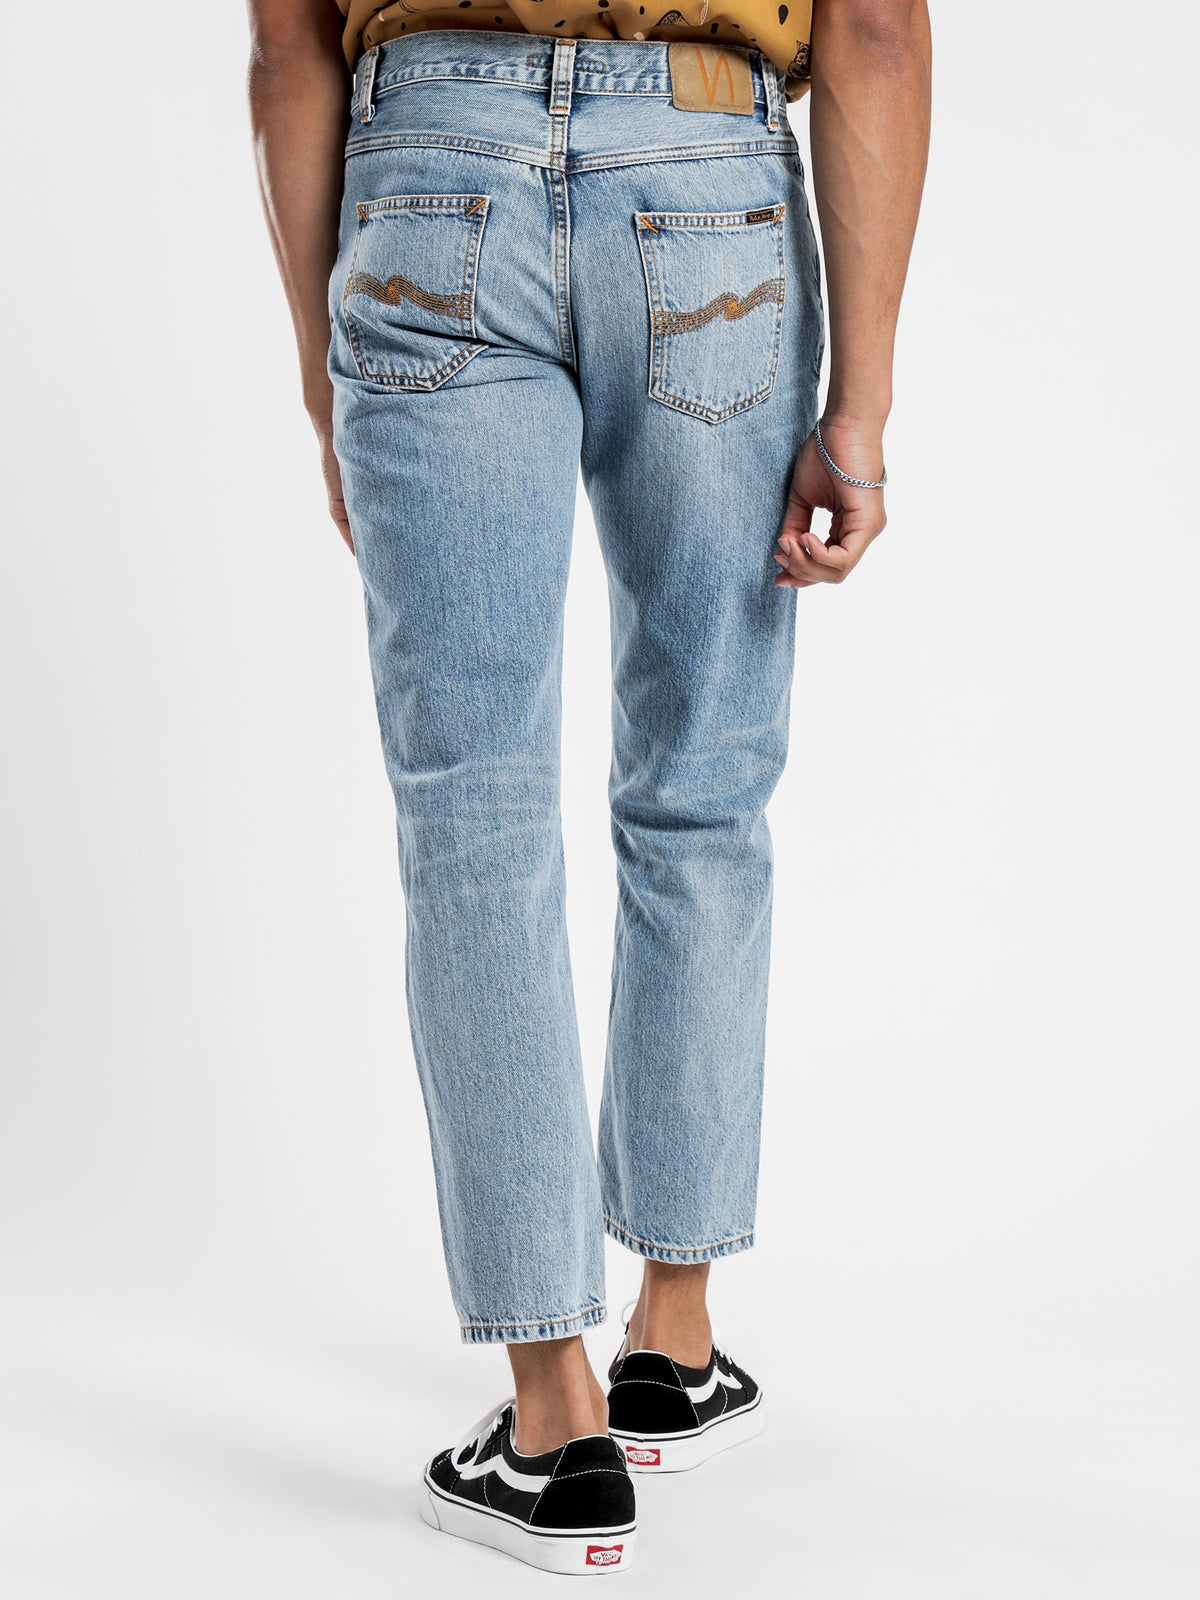 Gritty Jackson Jeans in Indigo Worn